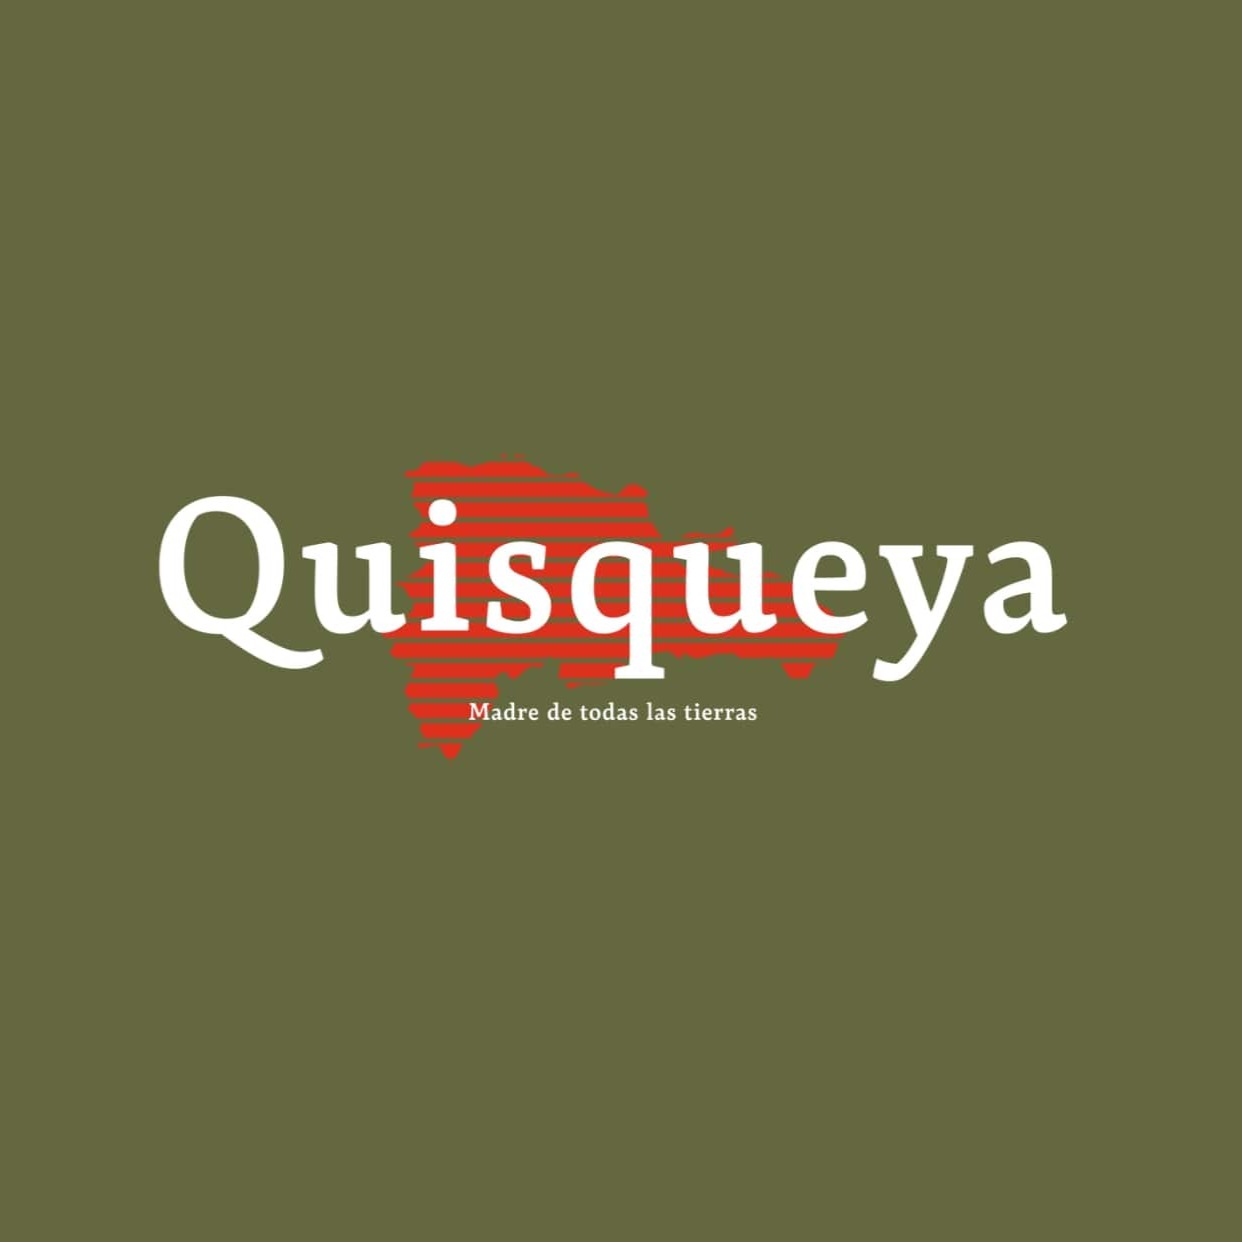 🇩🇴  Quisqueya t-shirt